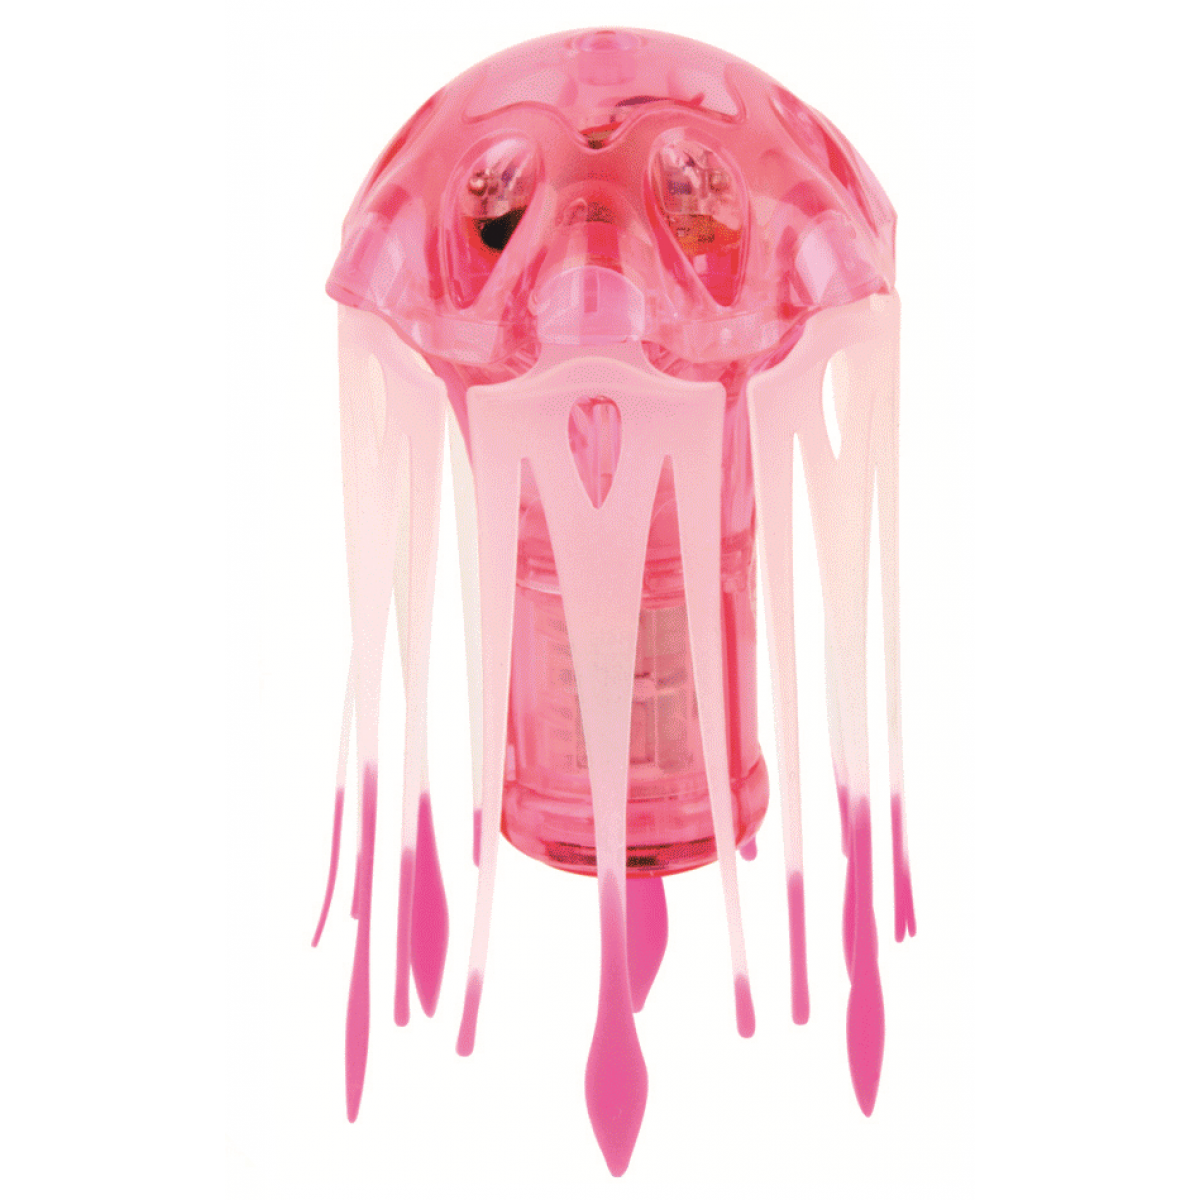 Hexbug Aquabot Medúza s akváriom ružová